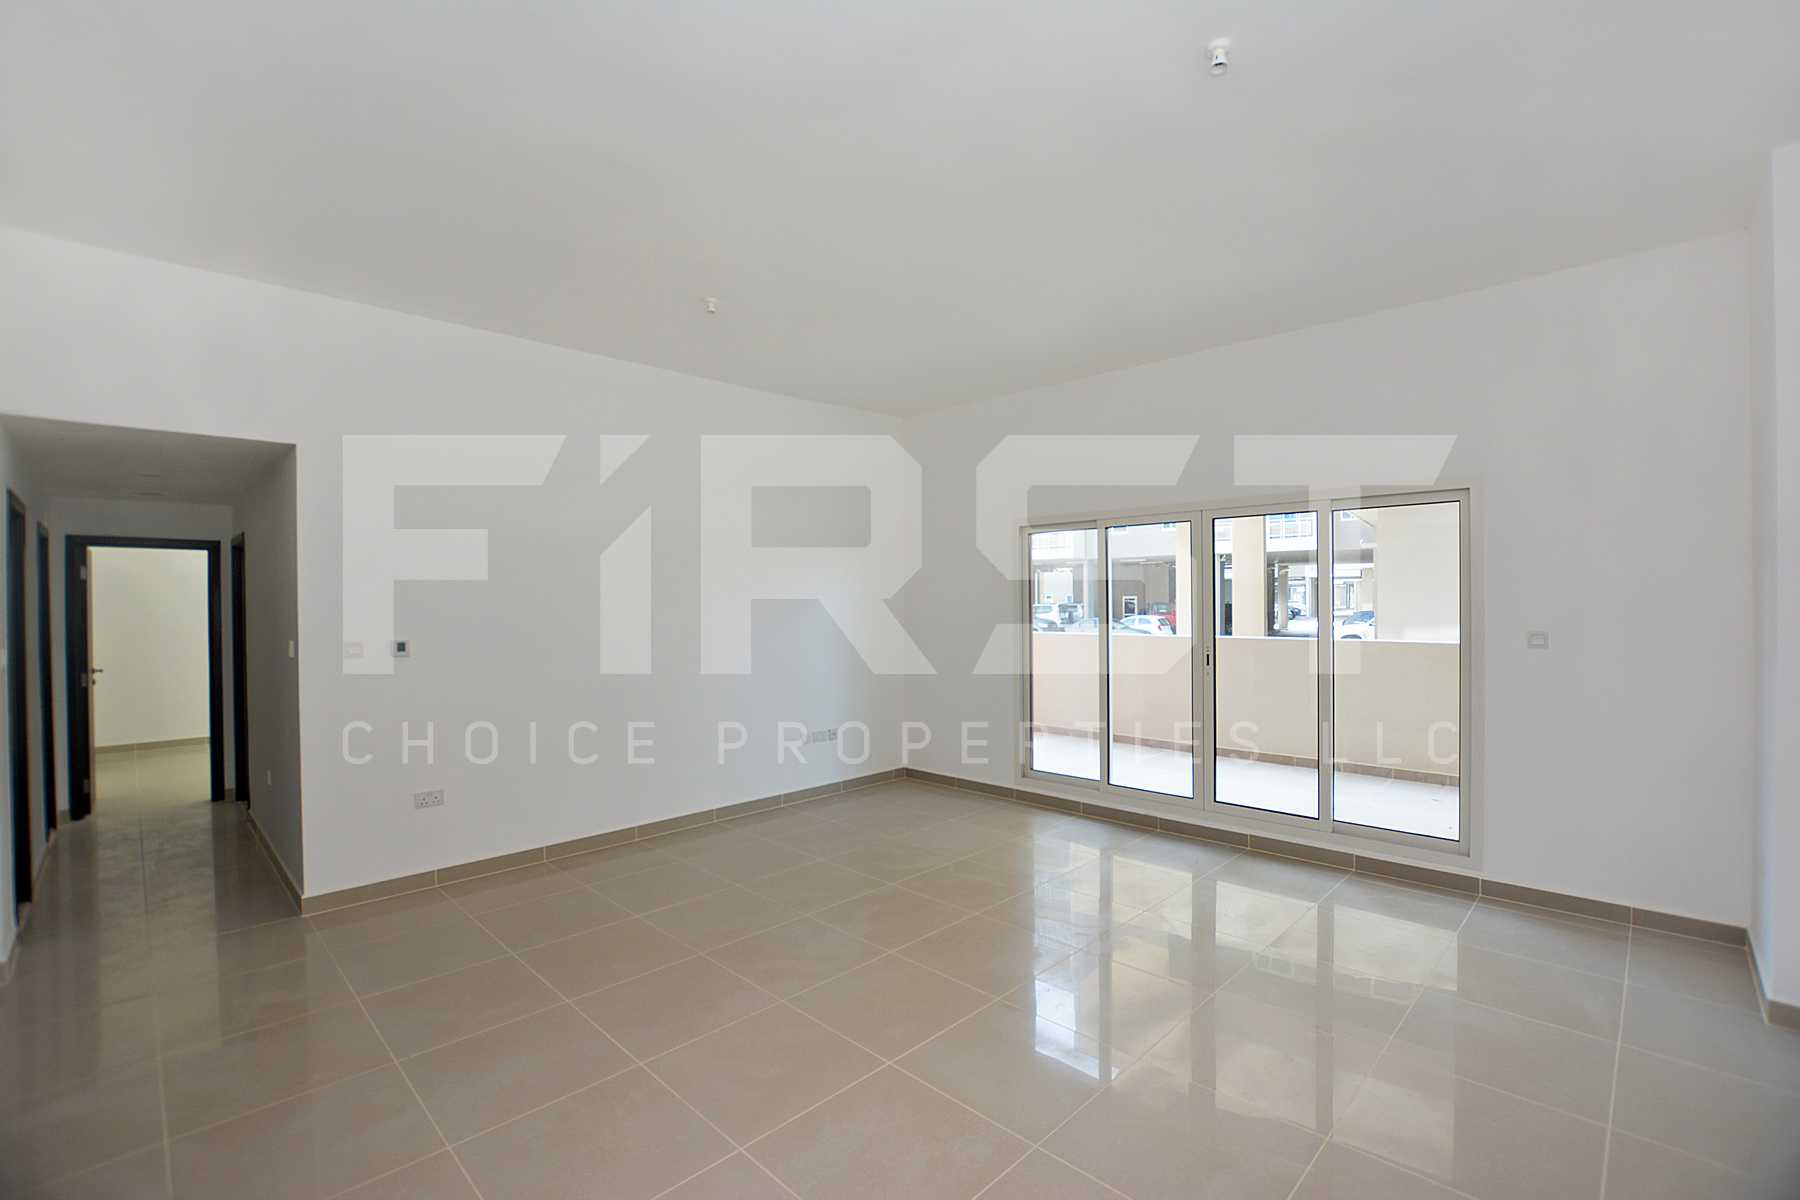 Internal Photo of 2 Bedroom Apartment Type A Ground Floor in Al Reef Downtown Al Reef Abu Dhabi UAE 141 sq.m 1517 sq.ft (8).jpg